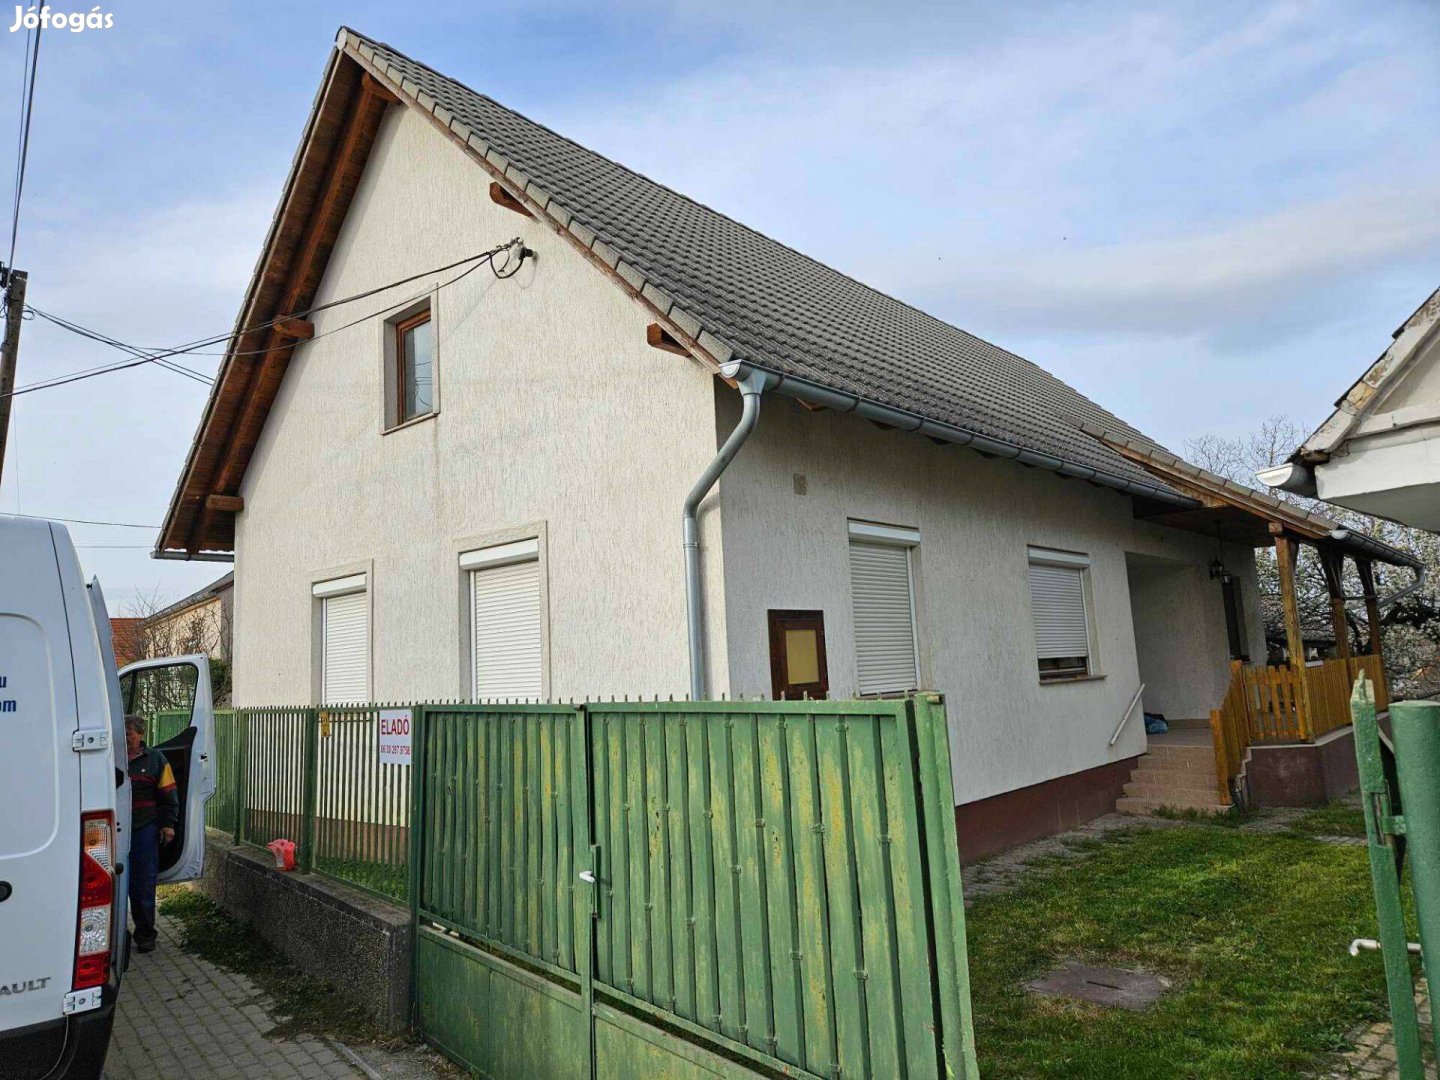 Eladó családi ház Györköny, építés éve 2004-2006